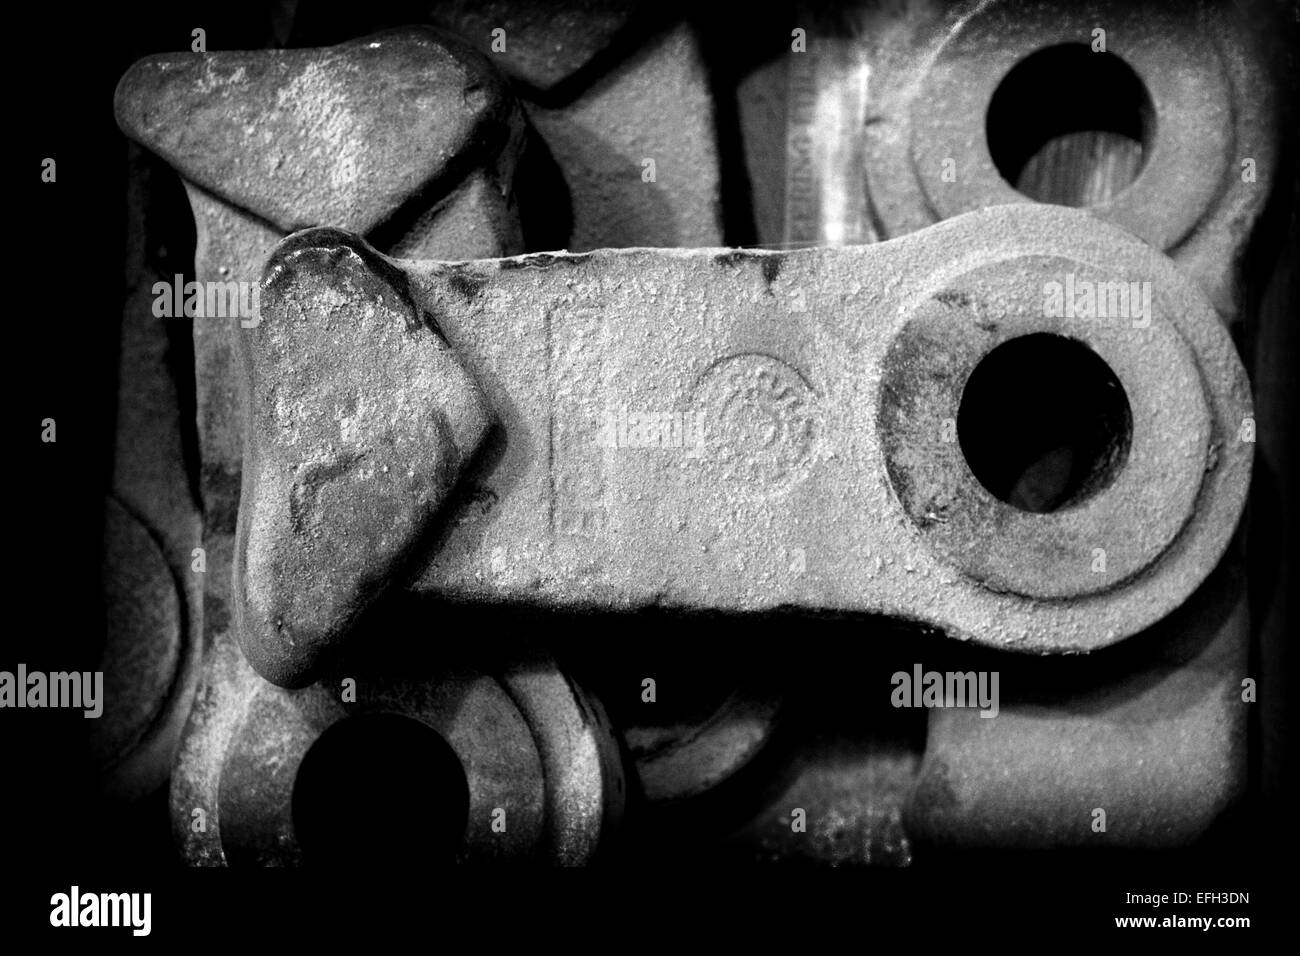 Dettaglio di perforato macchina industriale componente in un impianto di biomasse, Black & White close up Foto Stock